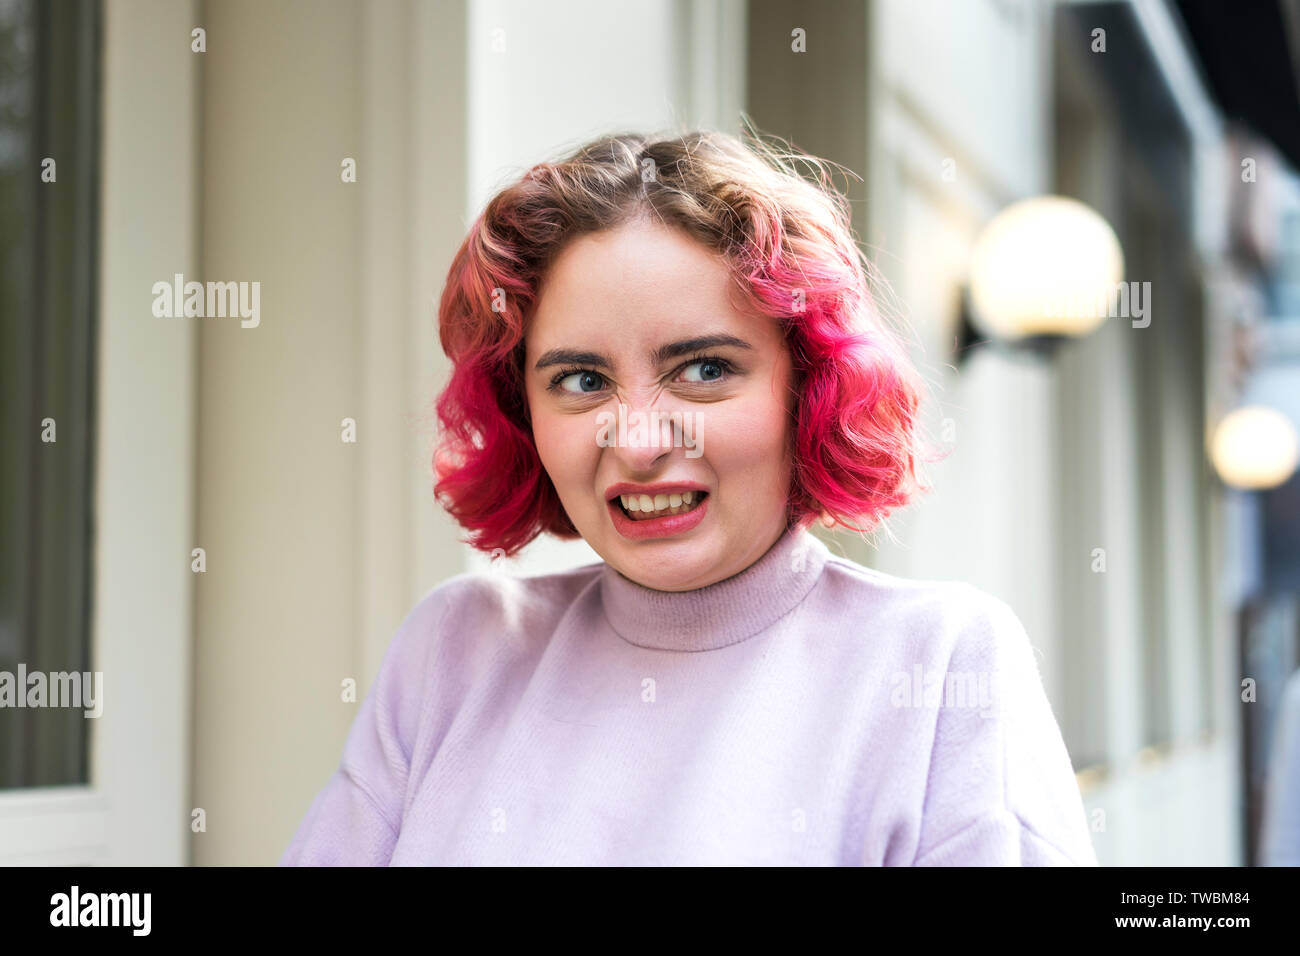 Emotionale junge Frau mit rosa gewelltes Haar mit einer Grimasse der Vernachlässigung oder Wut Stockfoto